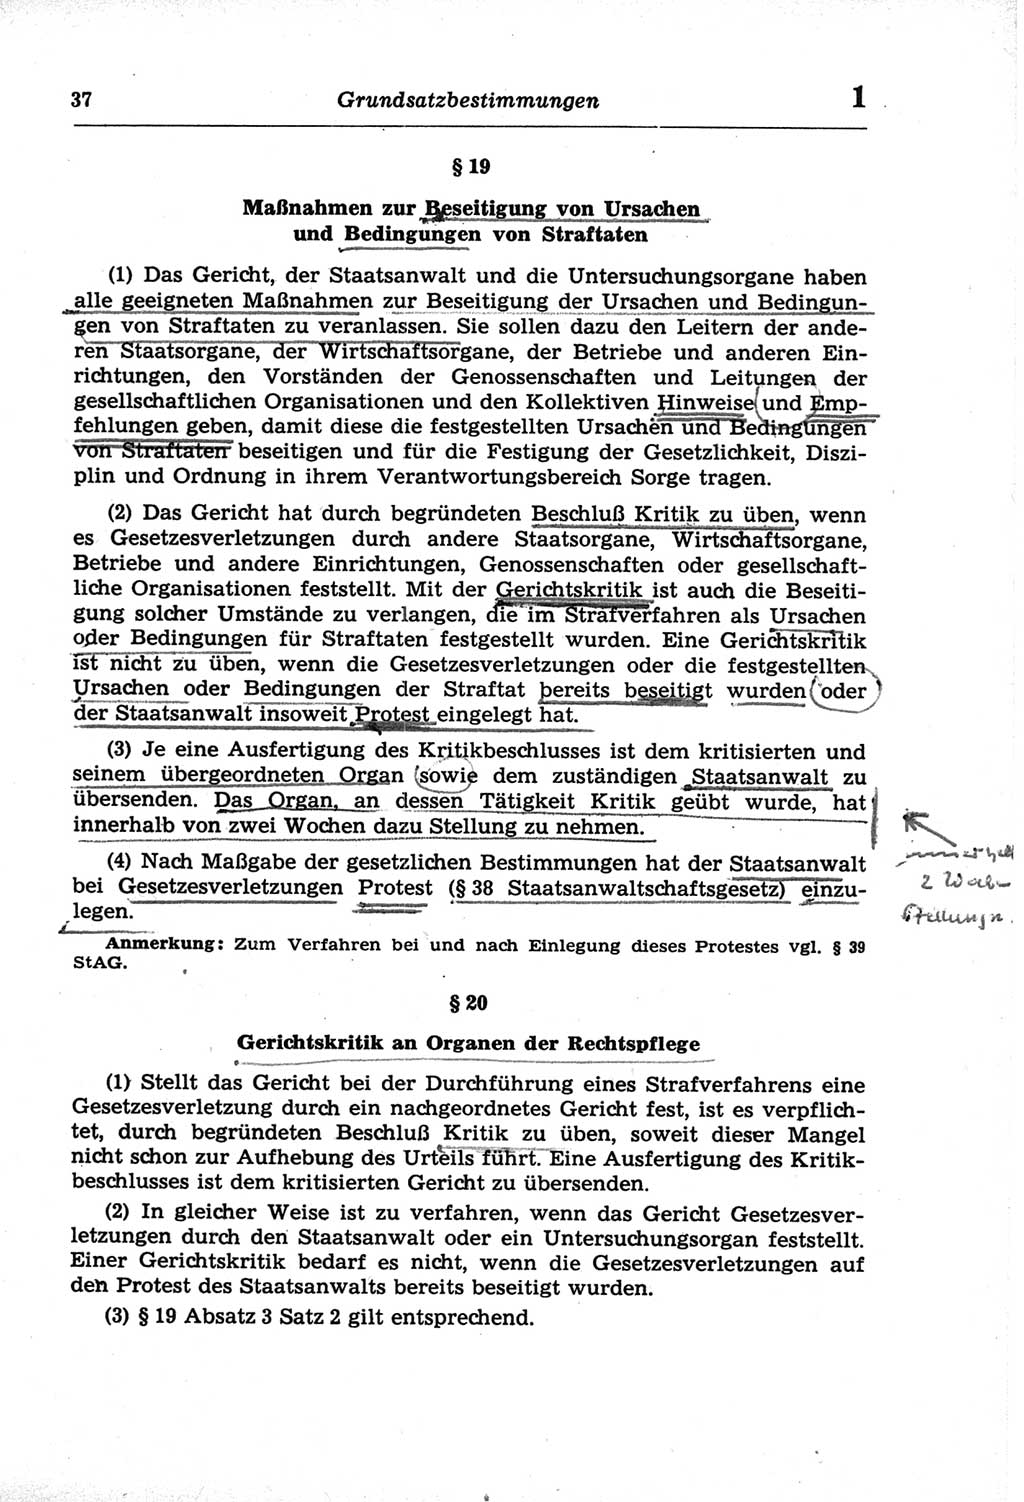 Strafprozeßordnung (StPO) der Deutschen Demokratischen Republik (DDR) und angrenzende Gesetze und Bestimmungen 1968, Seite 37 (StPO Ges. Bstgn. DDR 1968, S. 37)